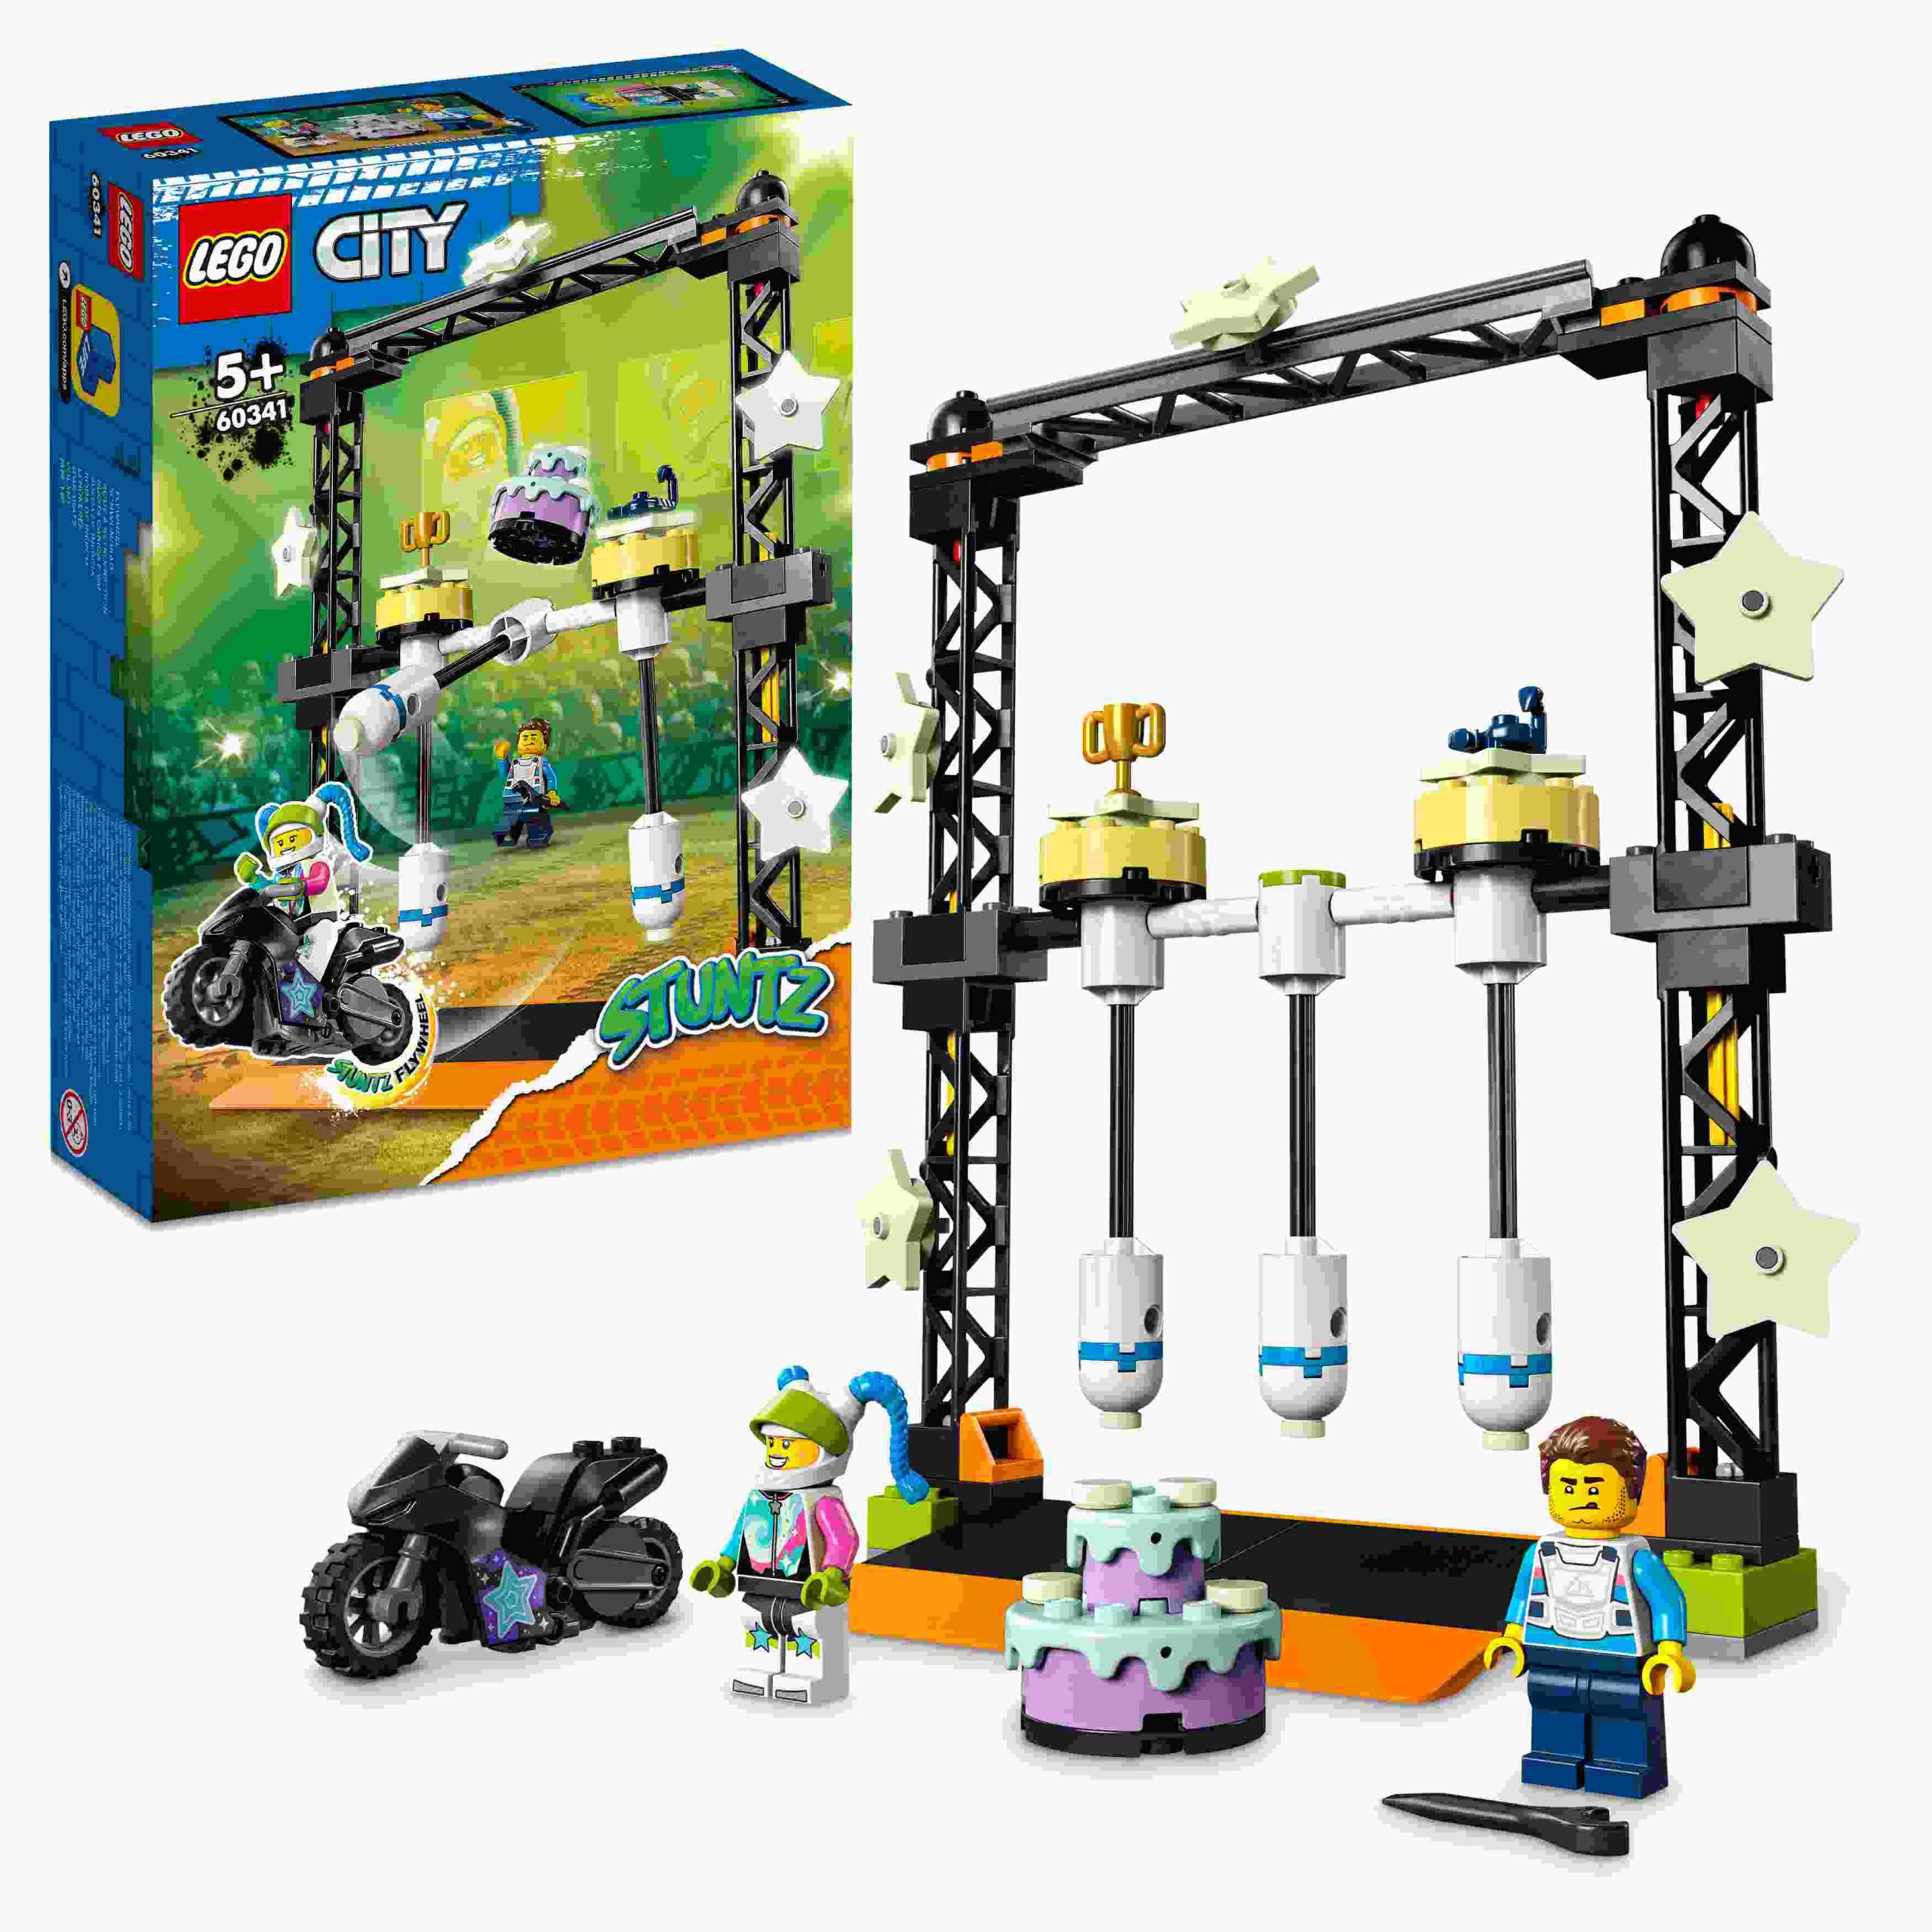 Lego city stuntz 60341 sfida acrobatica ko, moto giocattolo con minifigure, giochi per bambini e bambine dai 5 anni in su - LEGO CITY, LEGO CITY STUNTZ, Lego